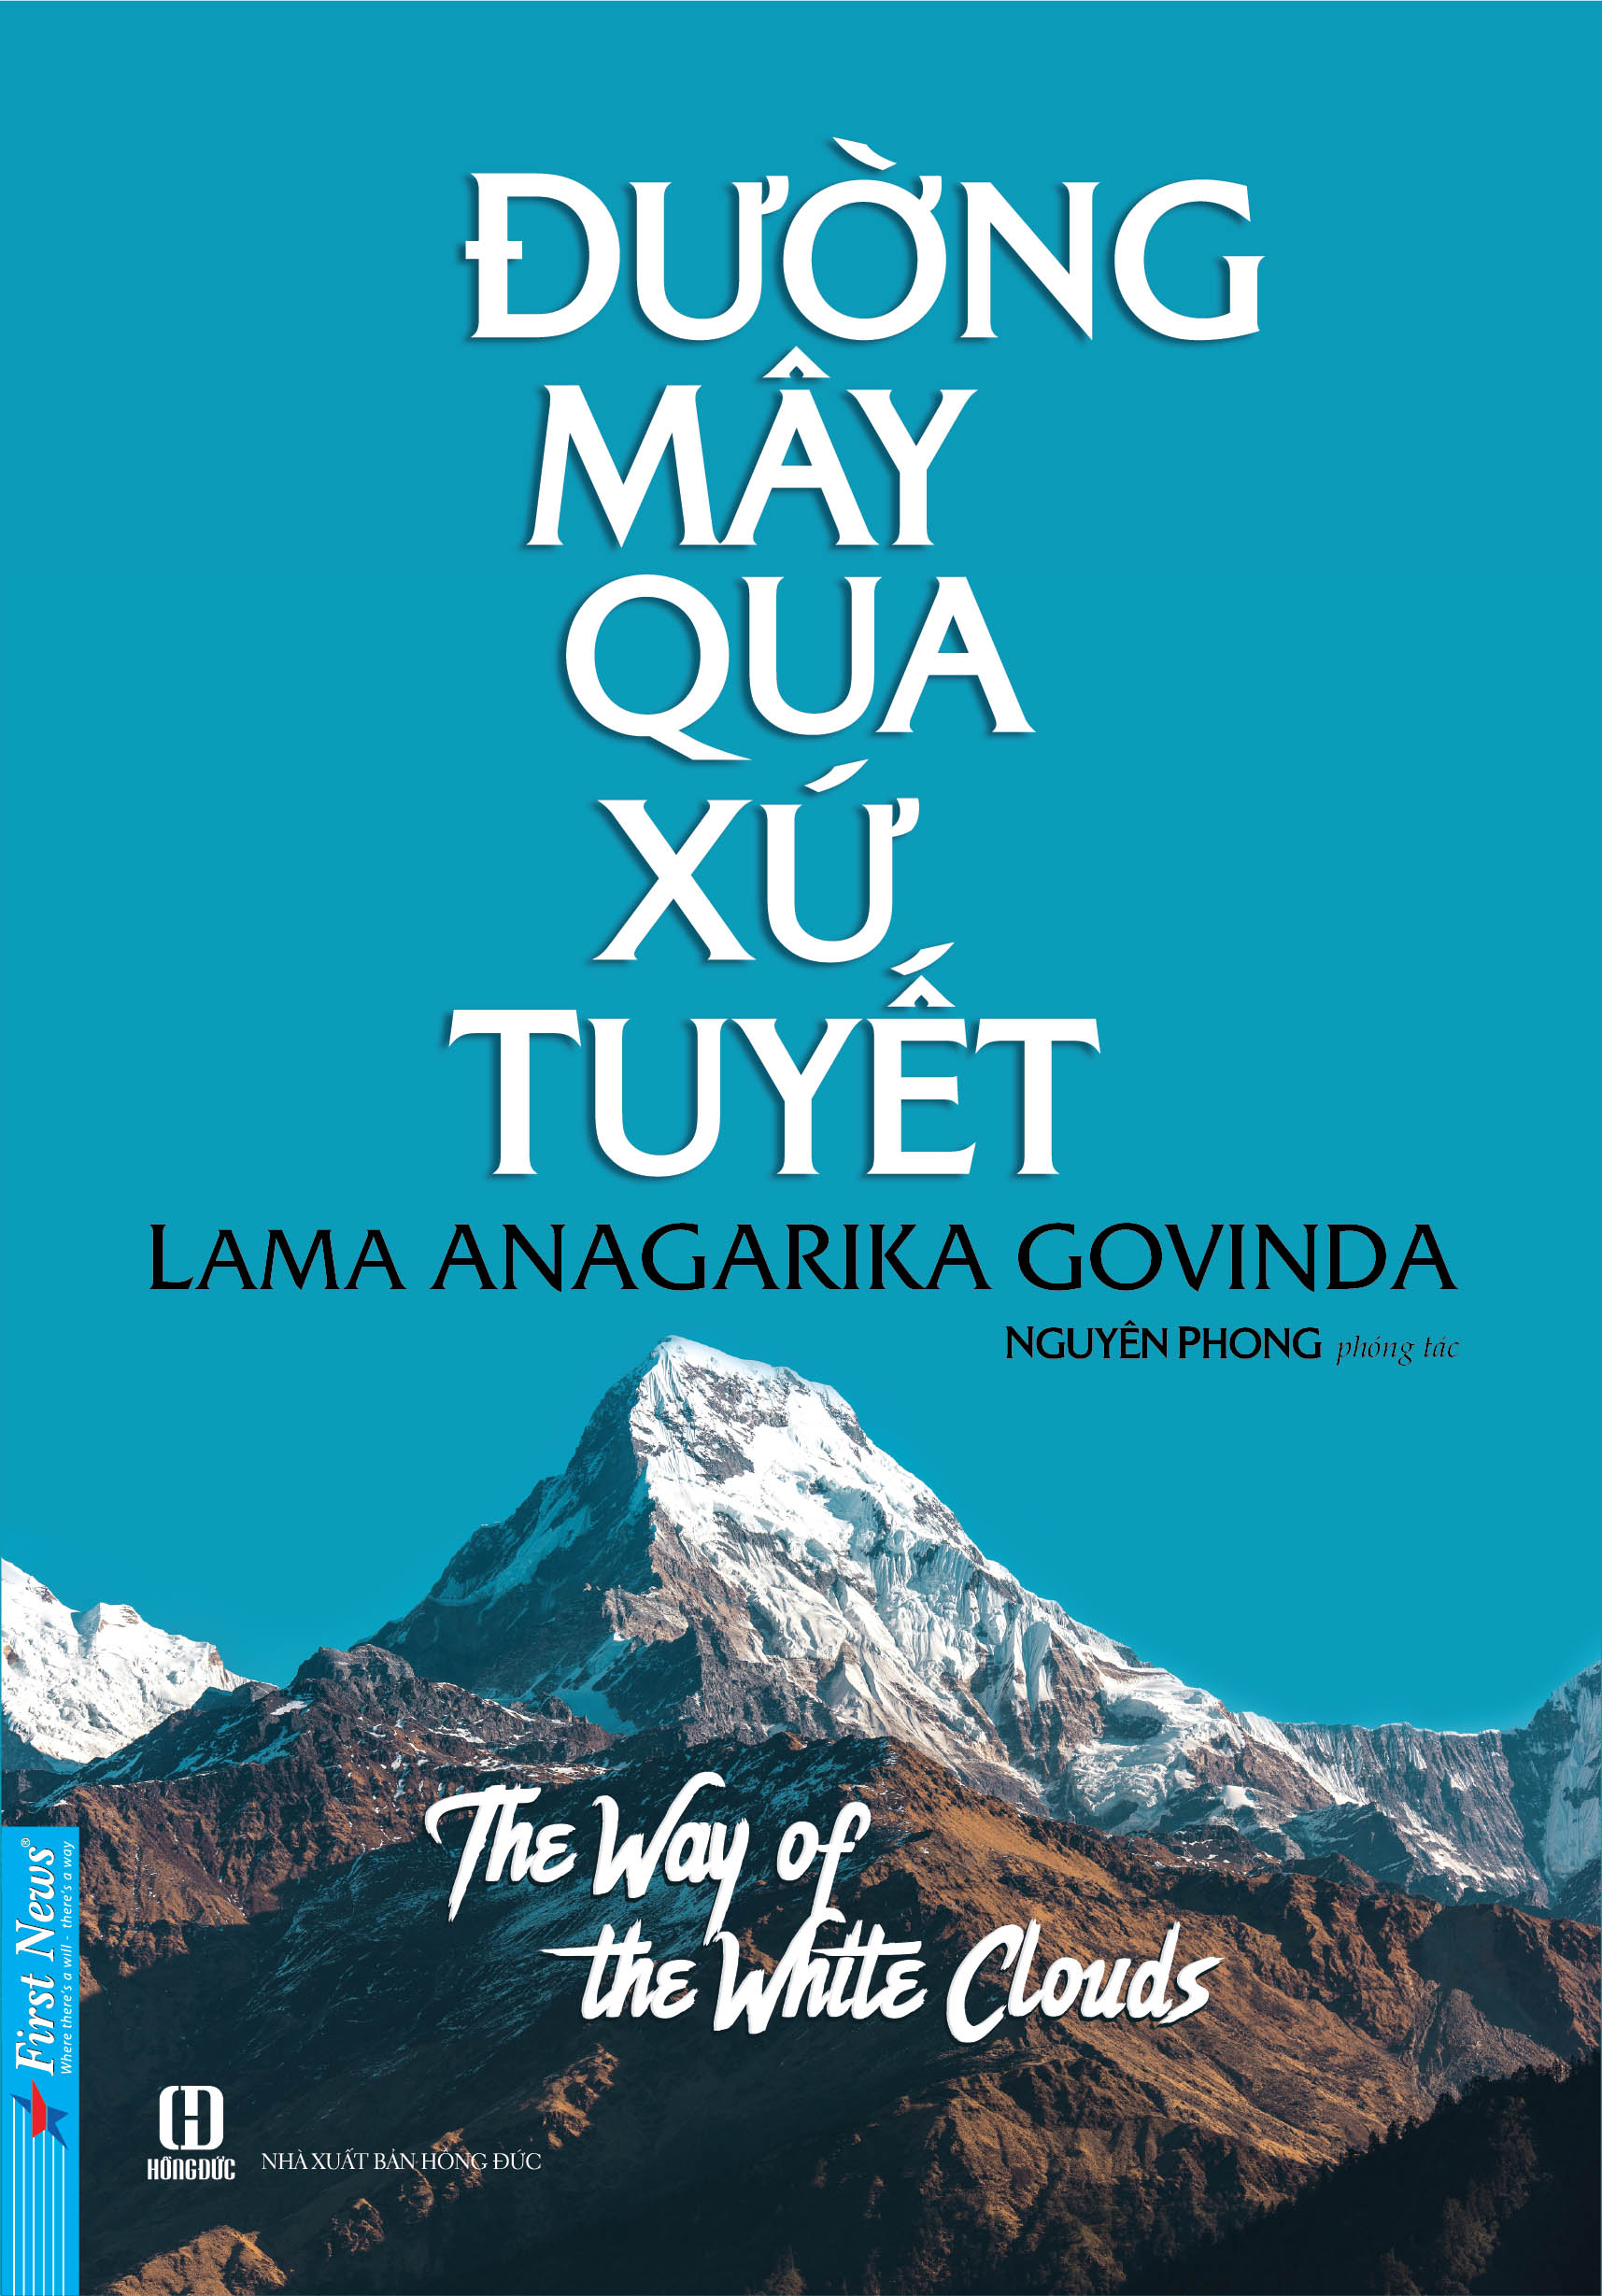 ĐƯỜNG MÂY QUA XỨ TUYẾT Nguyên tác: The Way of the White Clouds Lama Anagarika Govinda. Dịch giả: Nguyên Phong